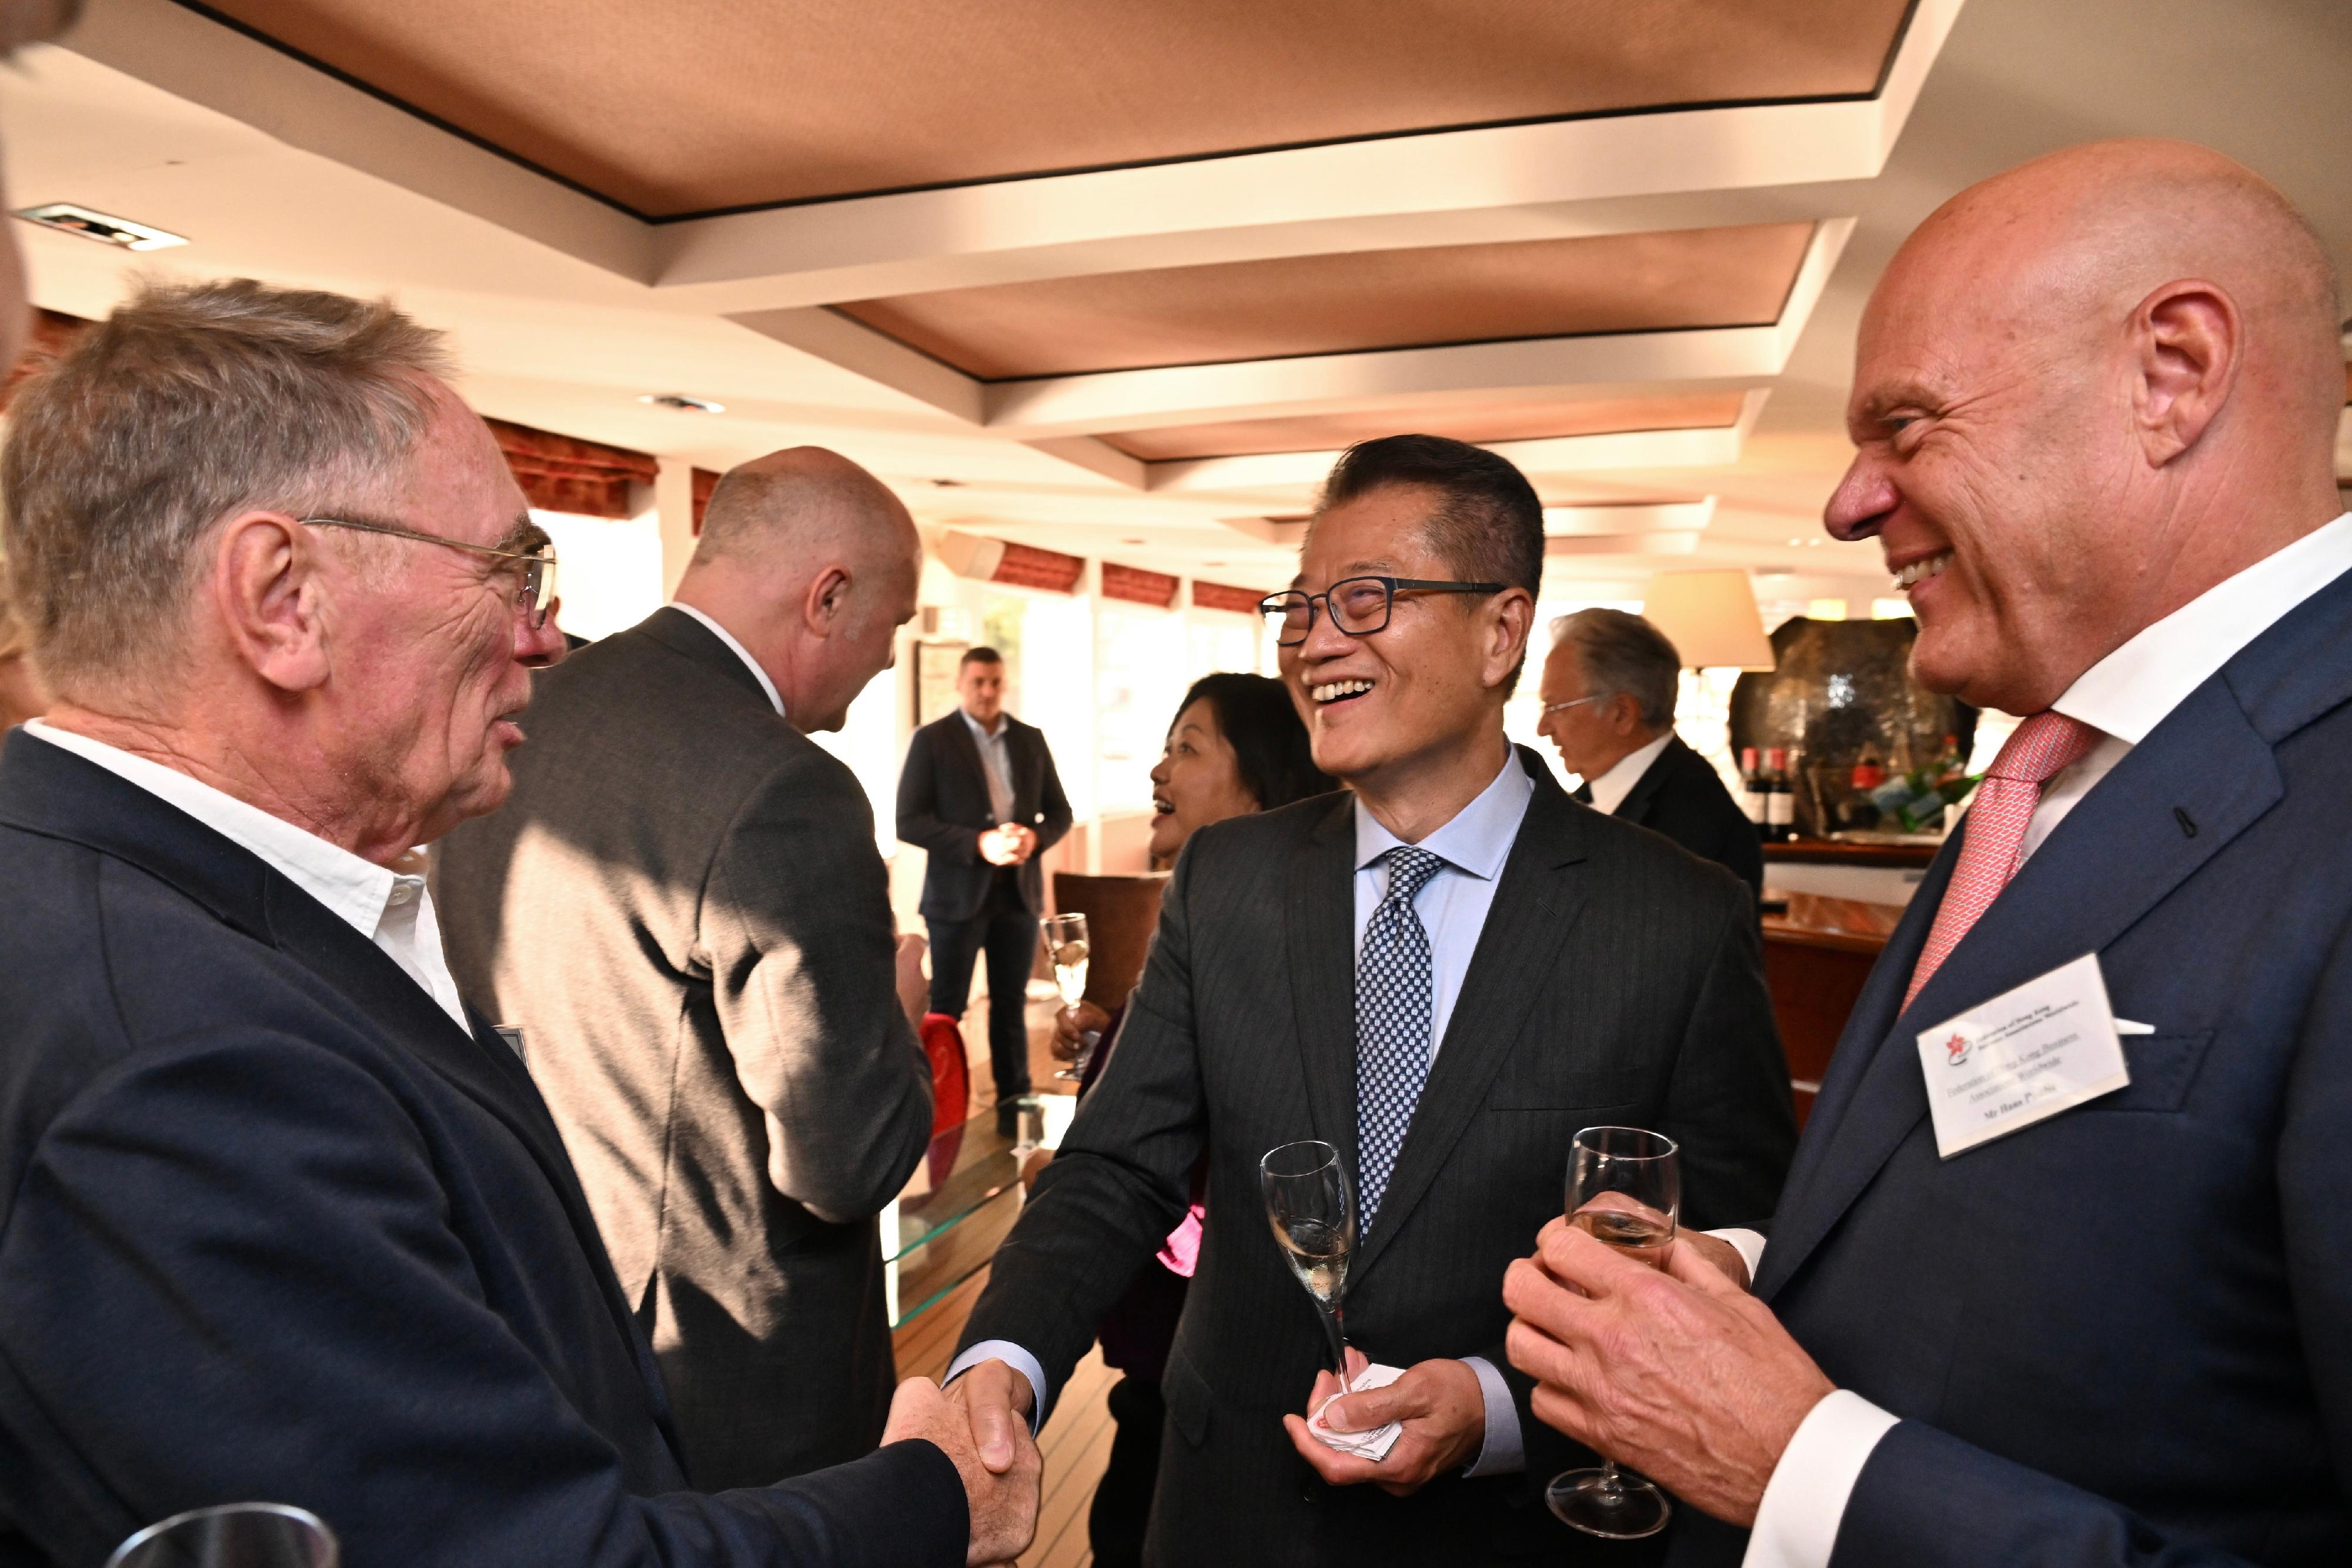 財政司司長陳茂波昨日（巴黎時間九月十八日）出席環球香港商業協會聯盟主辦的歐洲論壇酒會。圖示陳茂波（右二）與出席酒會的人士交流。
